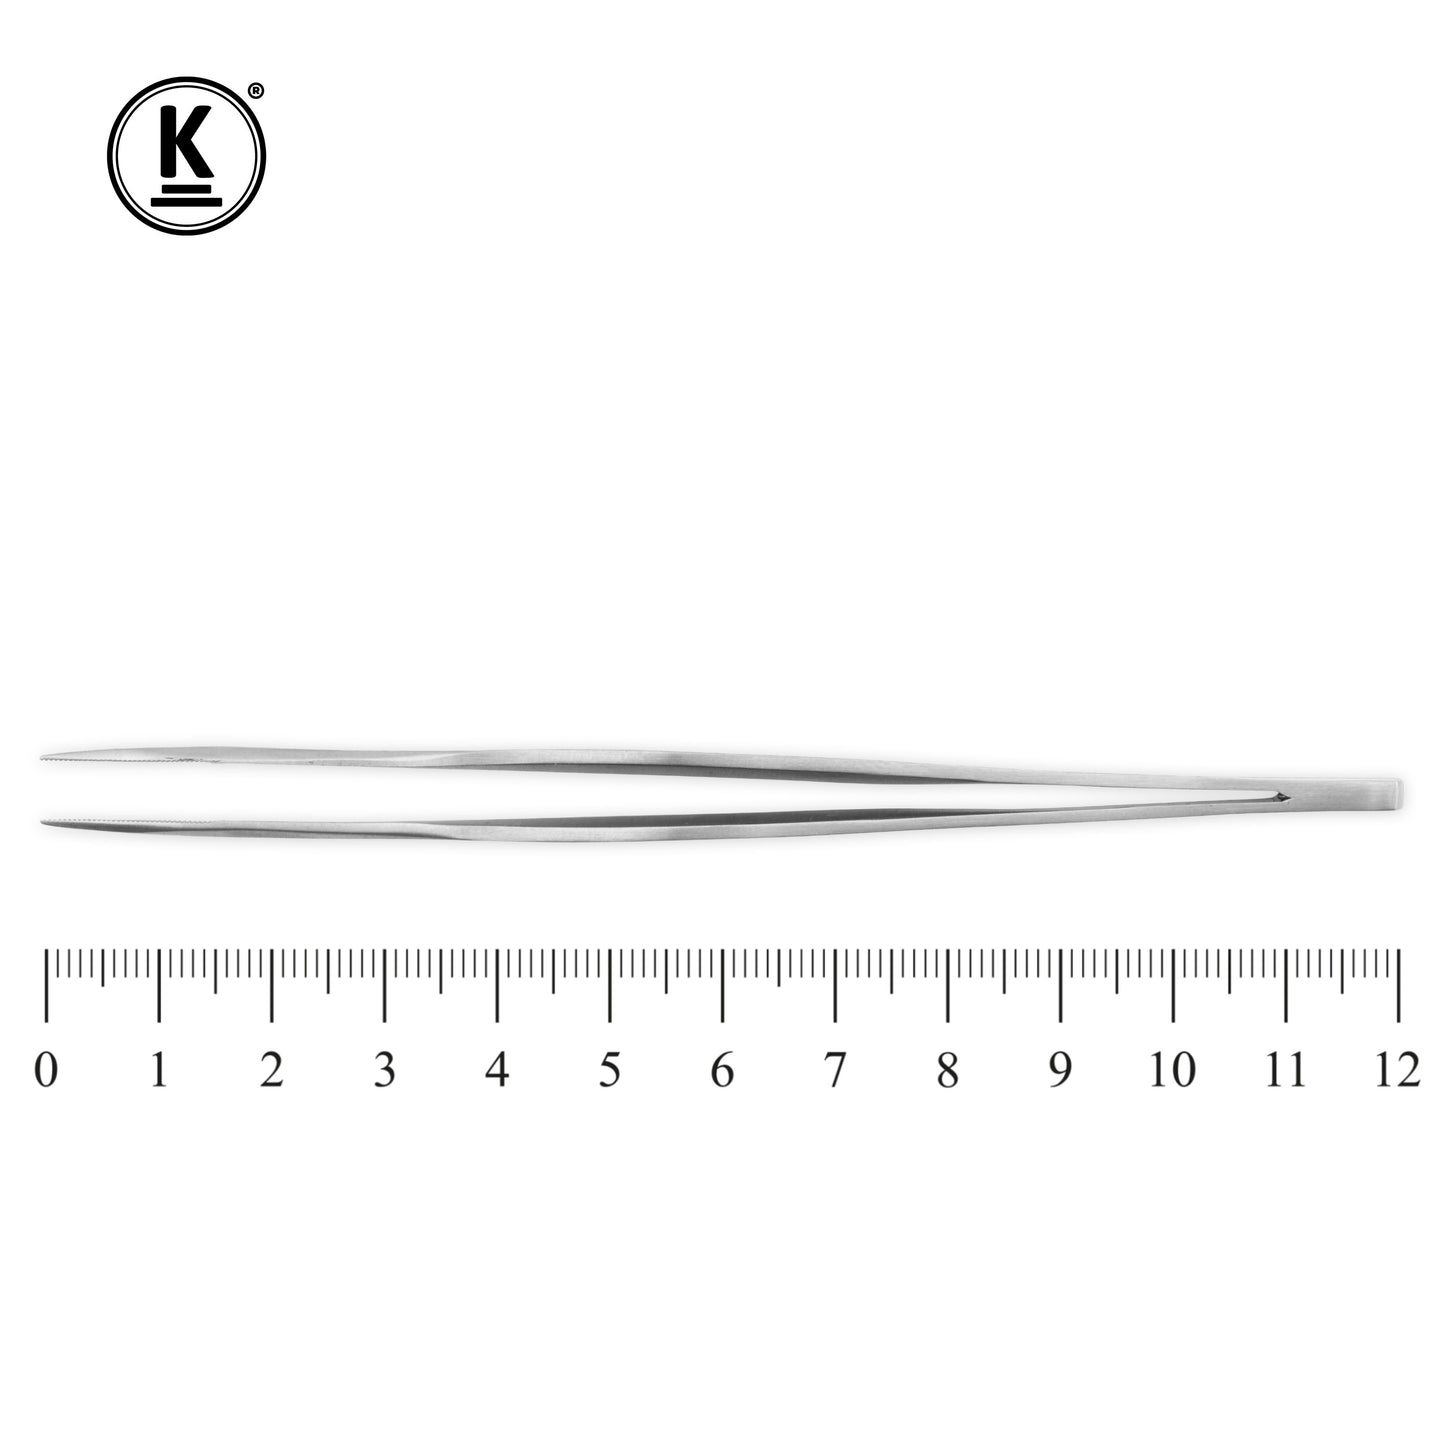 K-Pro splinter tweezers